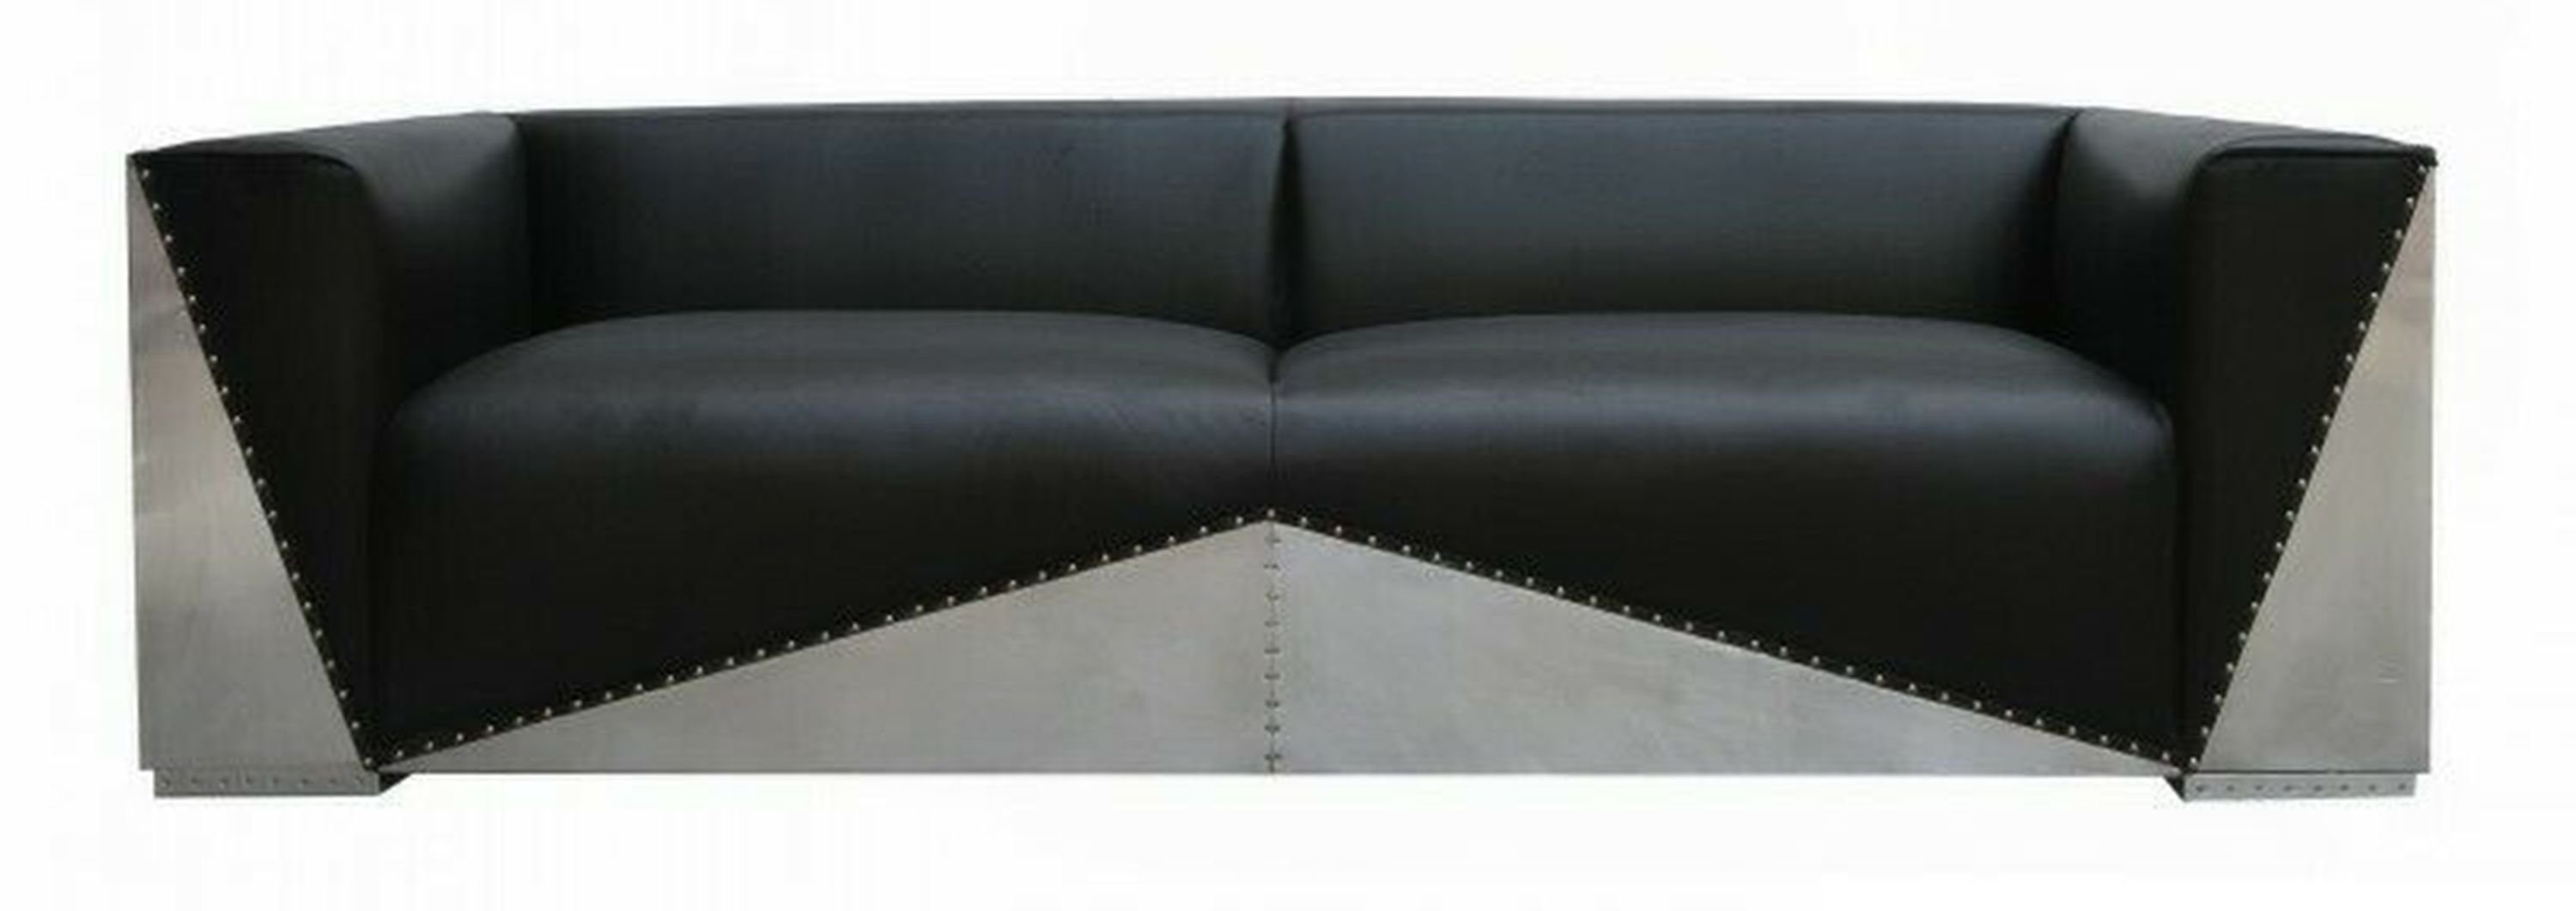 JVmoebel Möbel Echtleder Couch Luxus Polster Couchen Design Sofa, Sofa Ledersofa